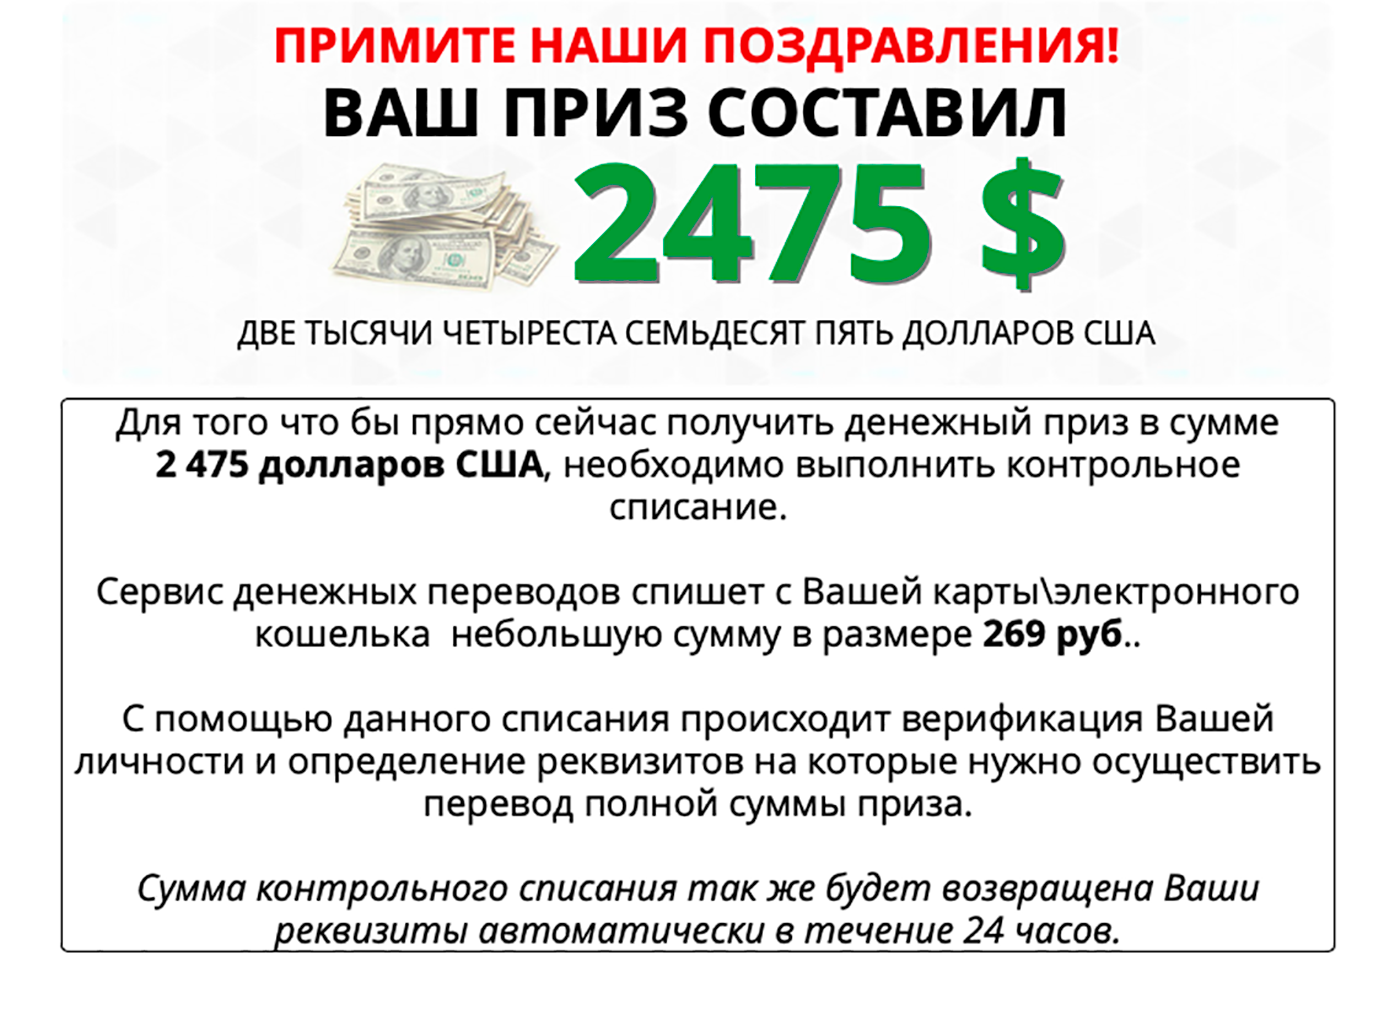 За четыре клика удалось «выиграть» 2475 $, но после контрольного списания 269 <span class=ruble>Р</span> счет так и не пополнится